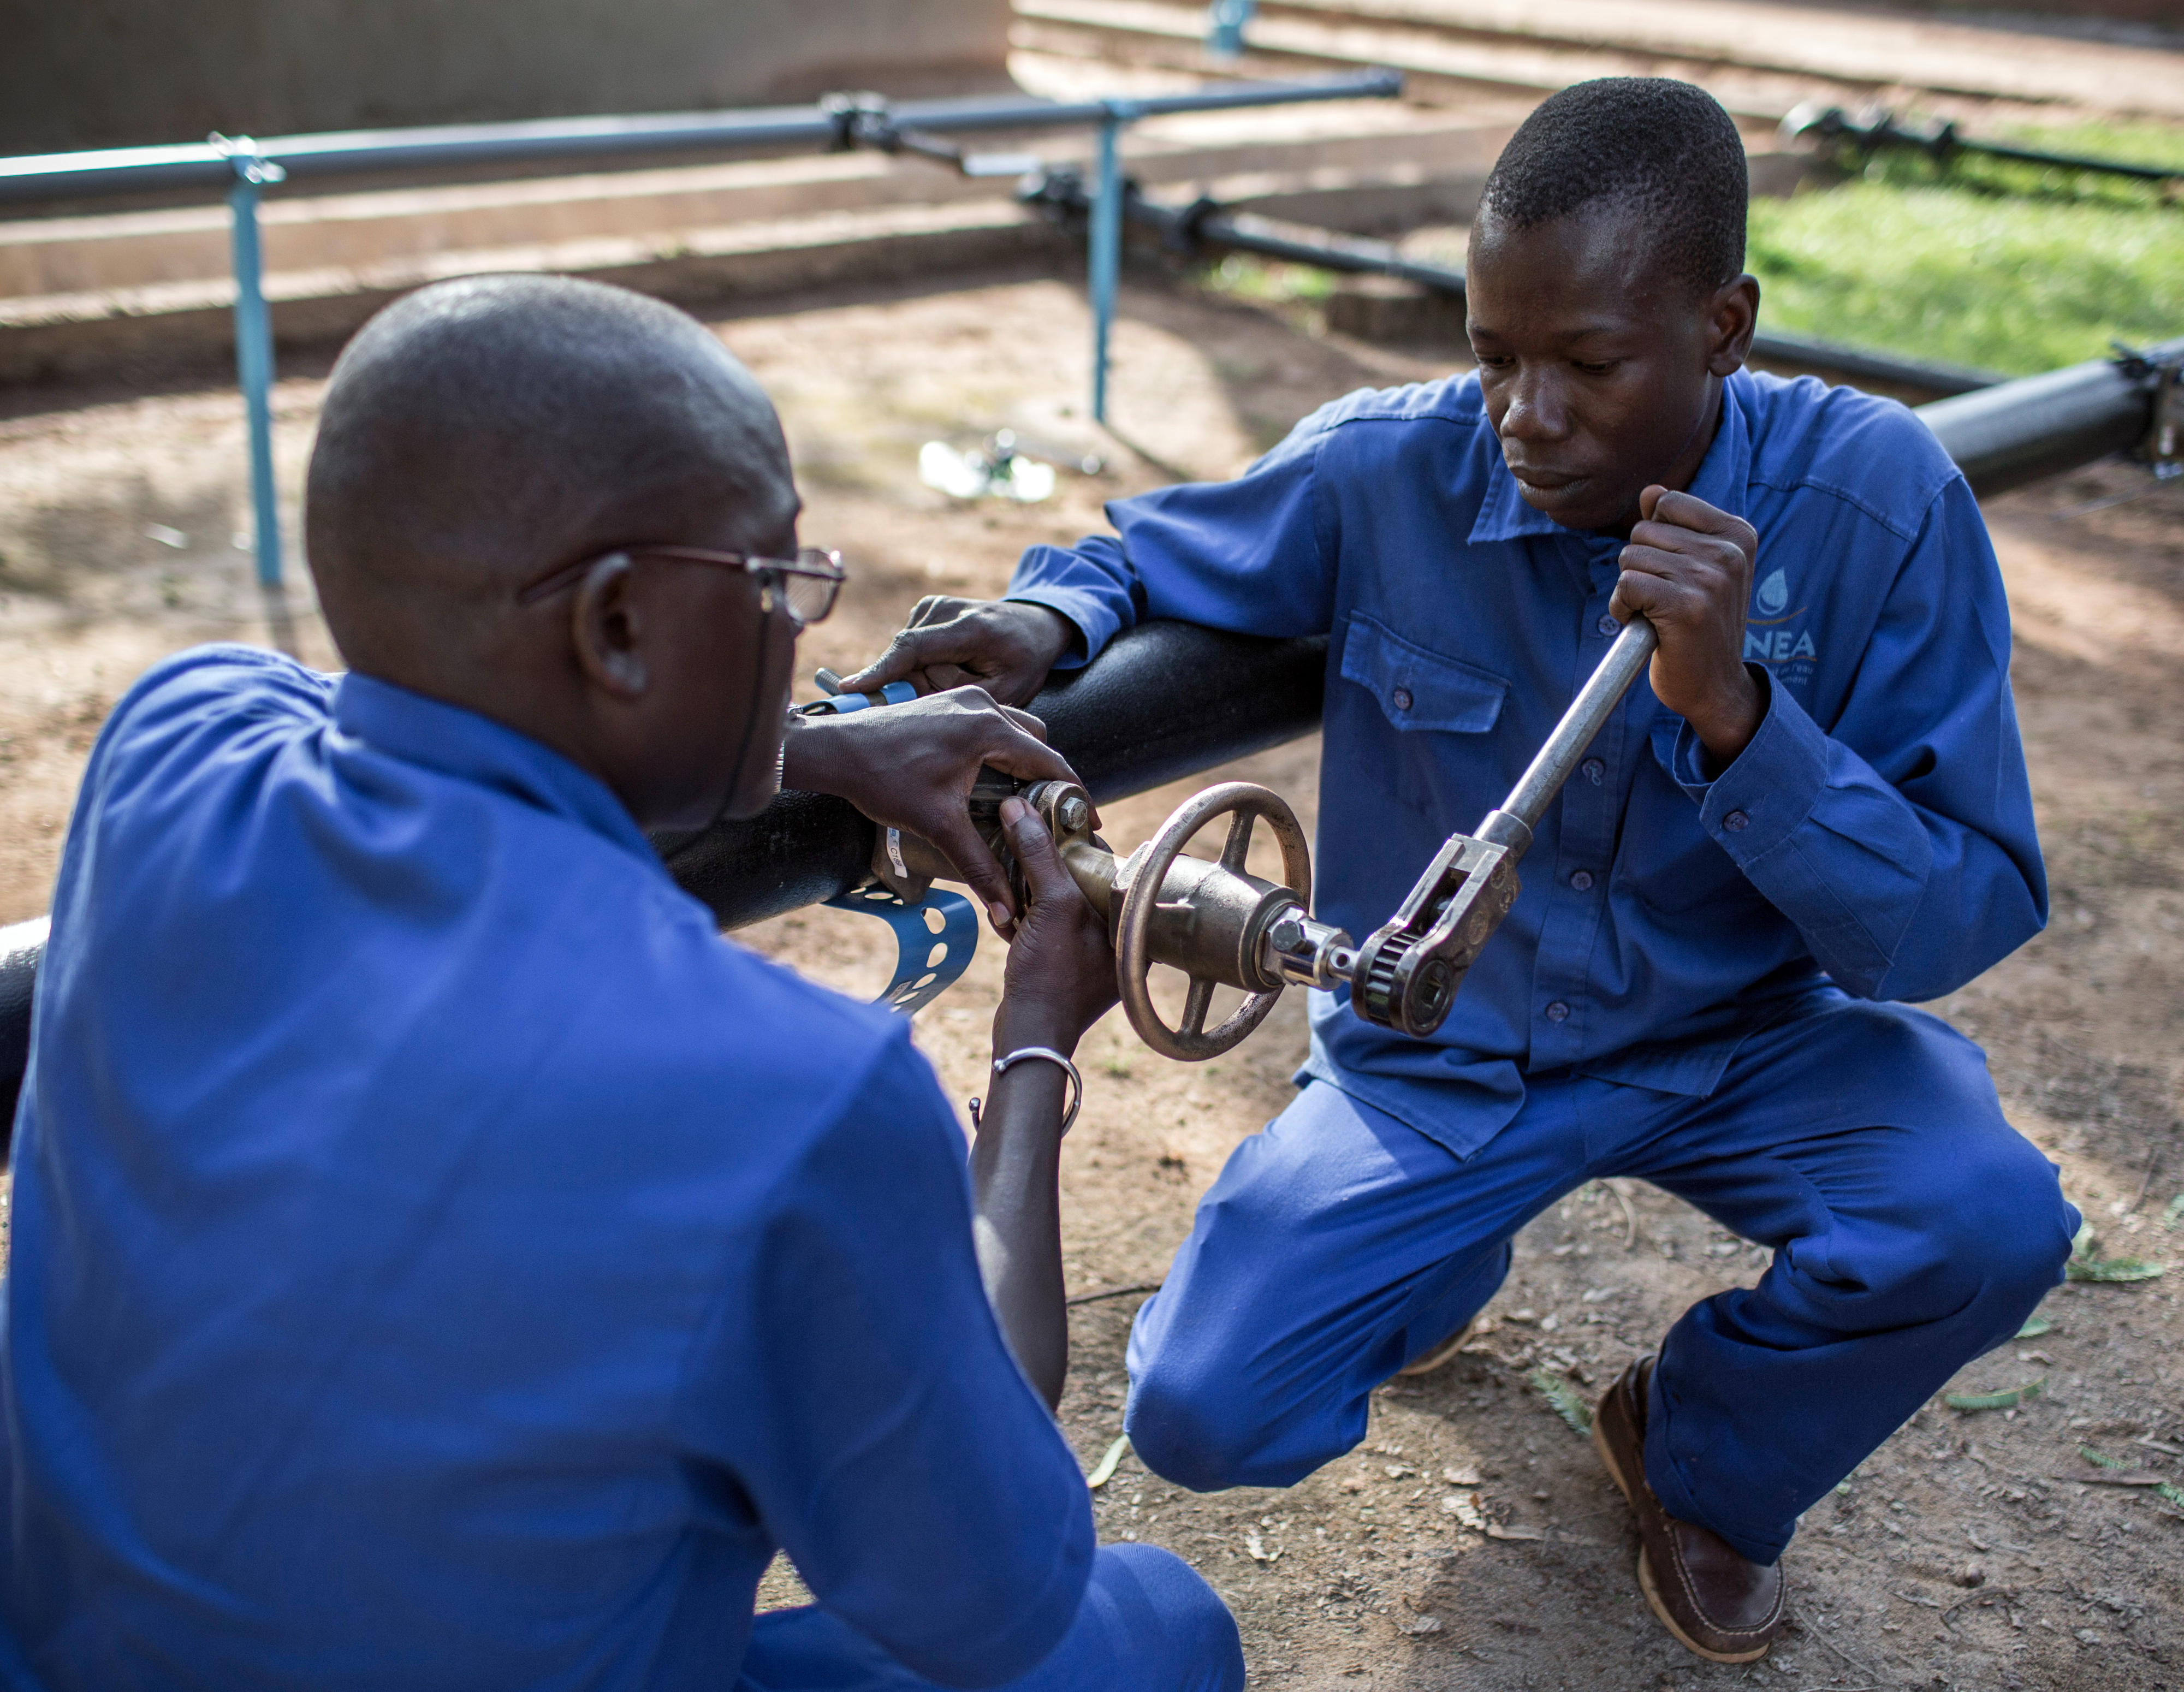 Ausbildung zum Klempner im Berufsbildungszentrum der nationalen Wasserbehörde in Burkina Faso